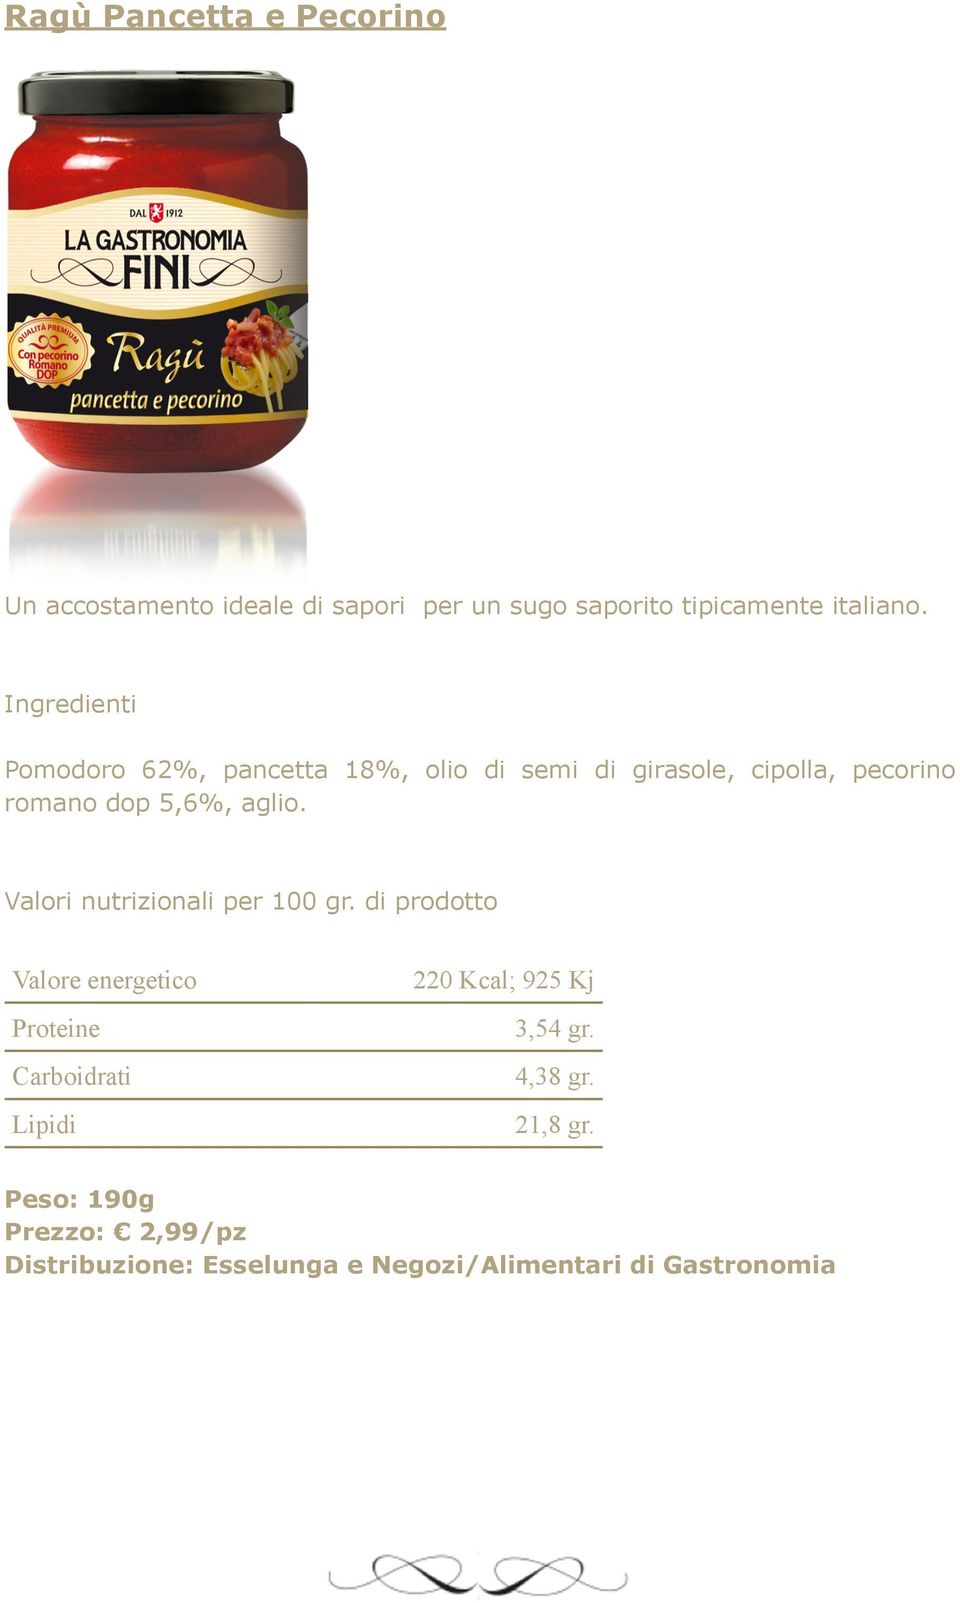 Pomodoro 62%, pancetta 18%, olio di semi di girasole, cipolla, pecorino